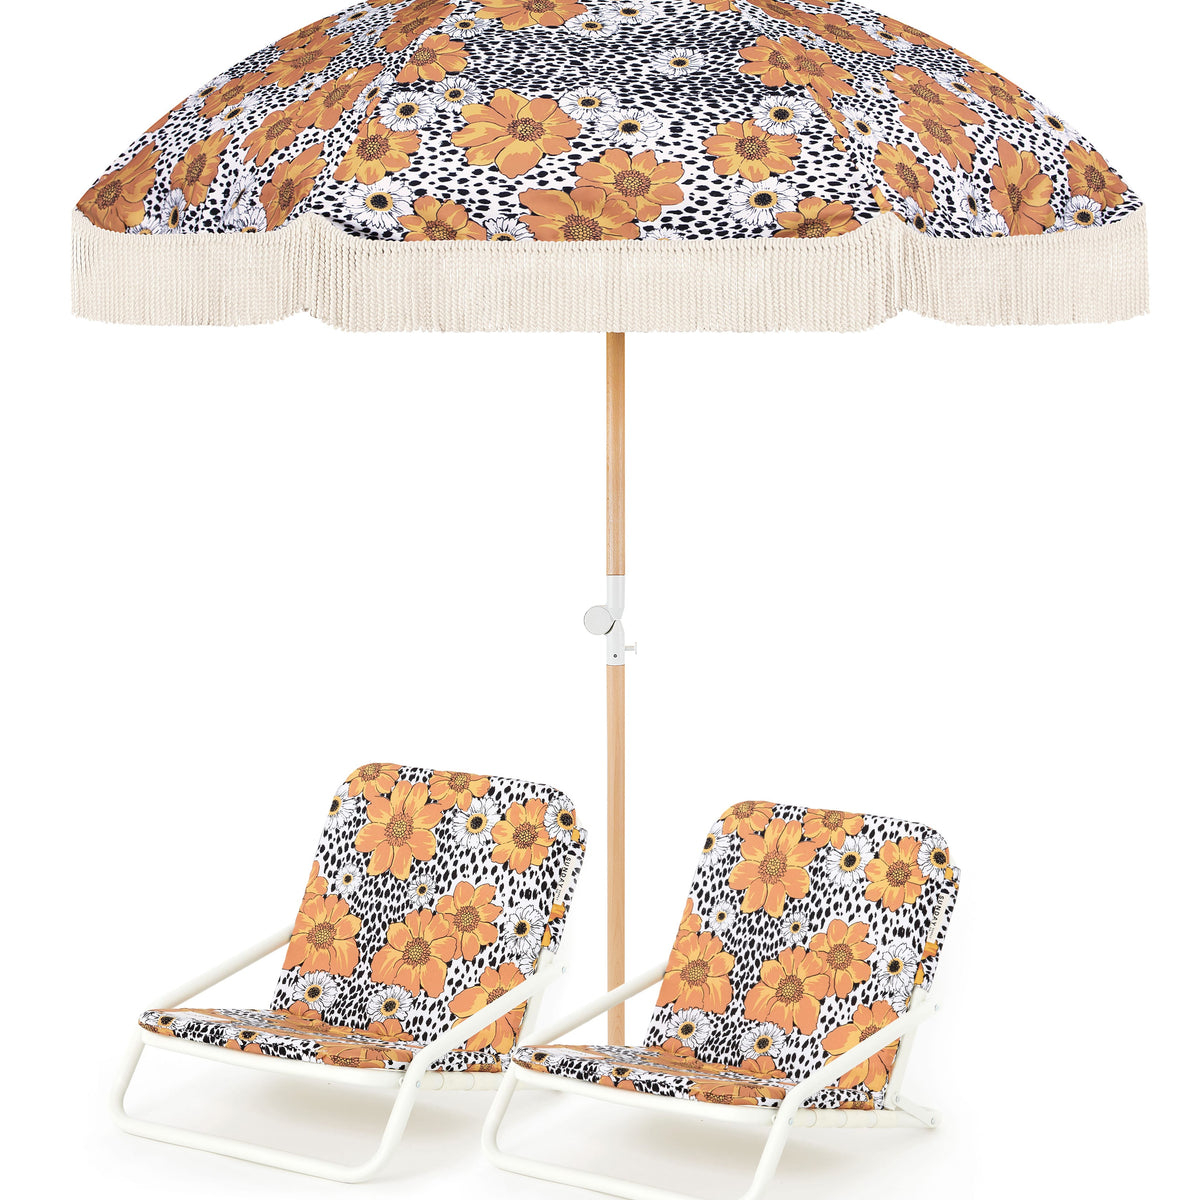 Animal Kingdom Beach Umbrella & Beach Chair Set